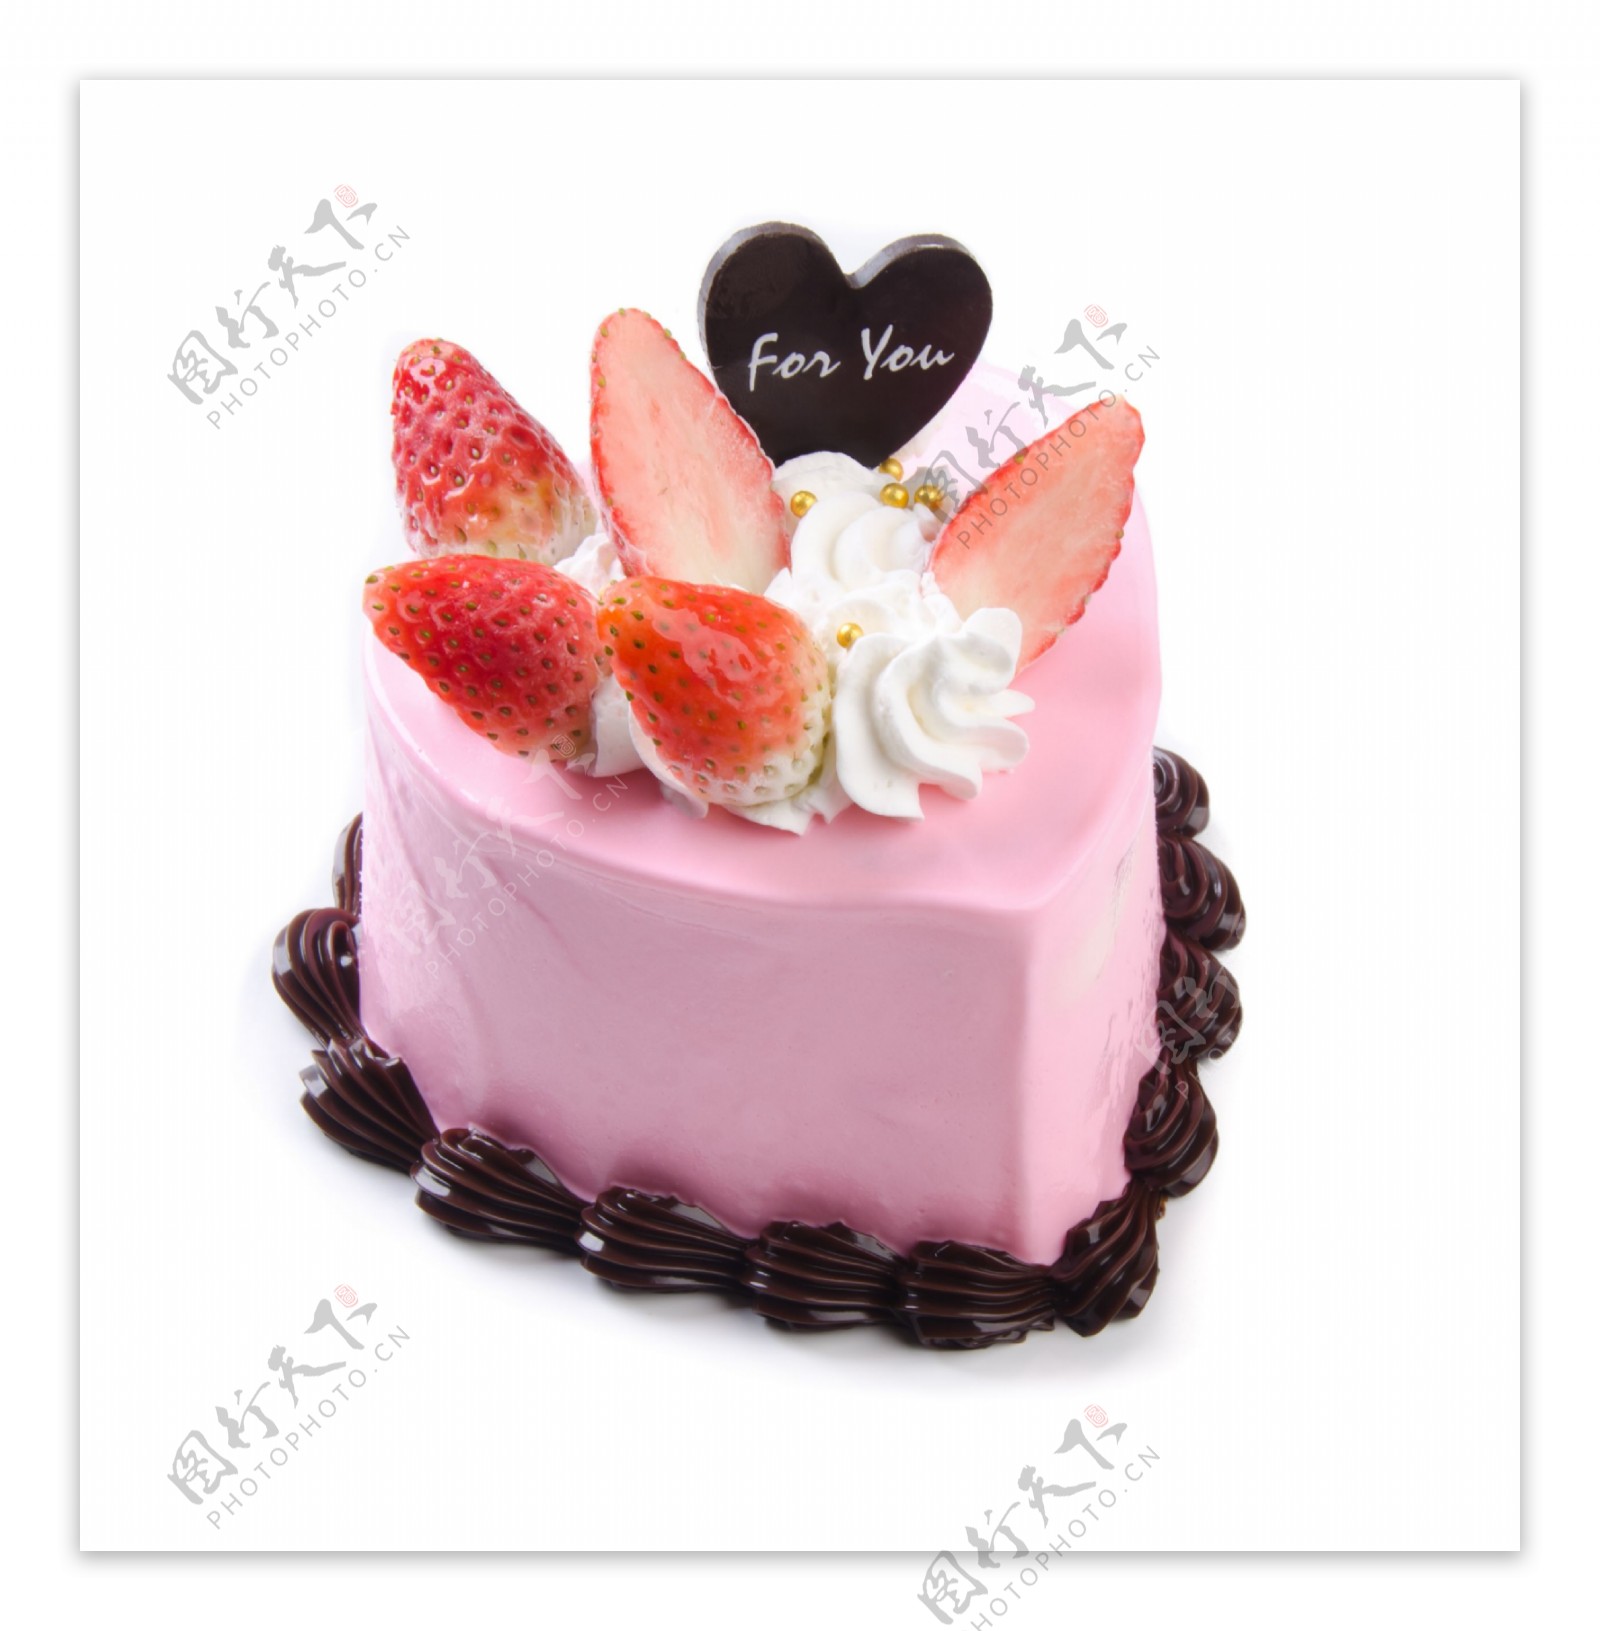 心形水果蛋糕图片